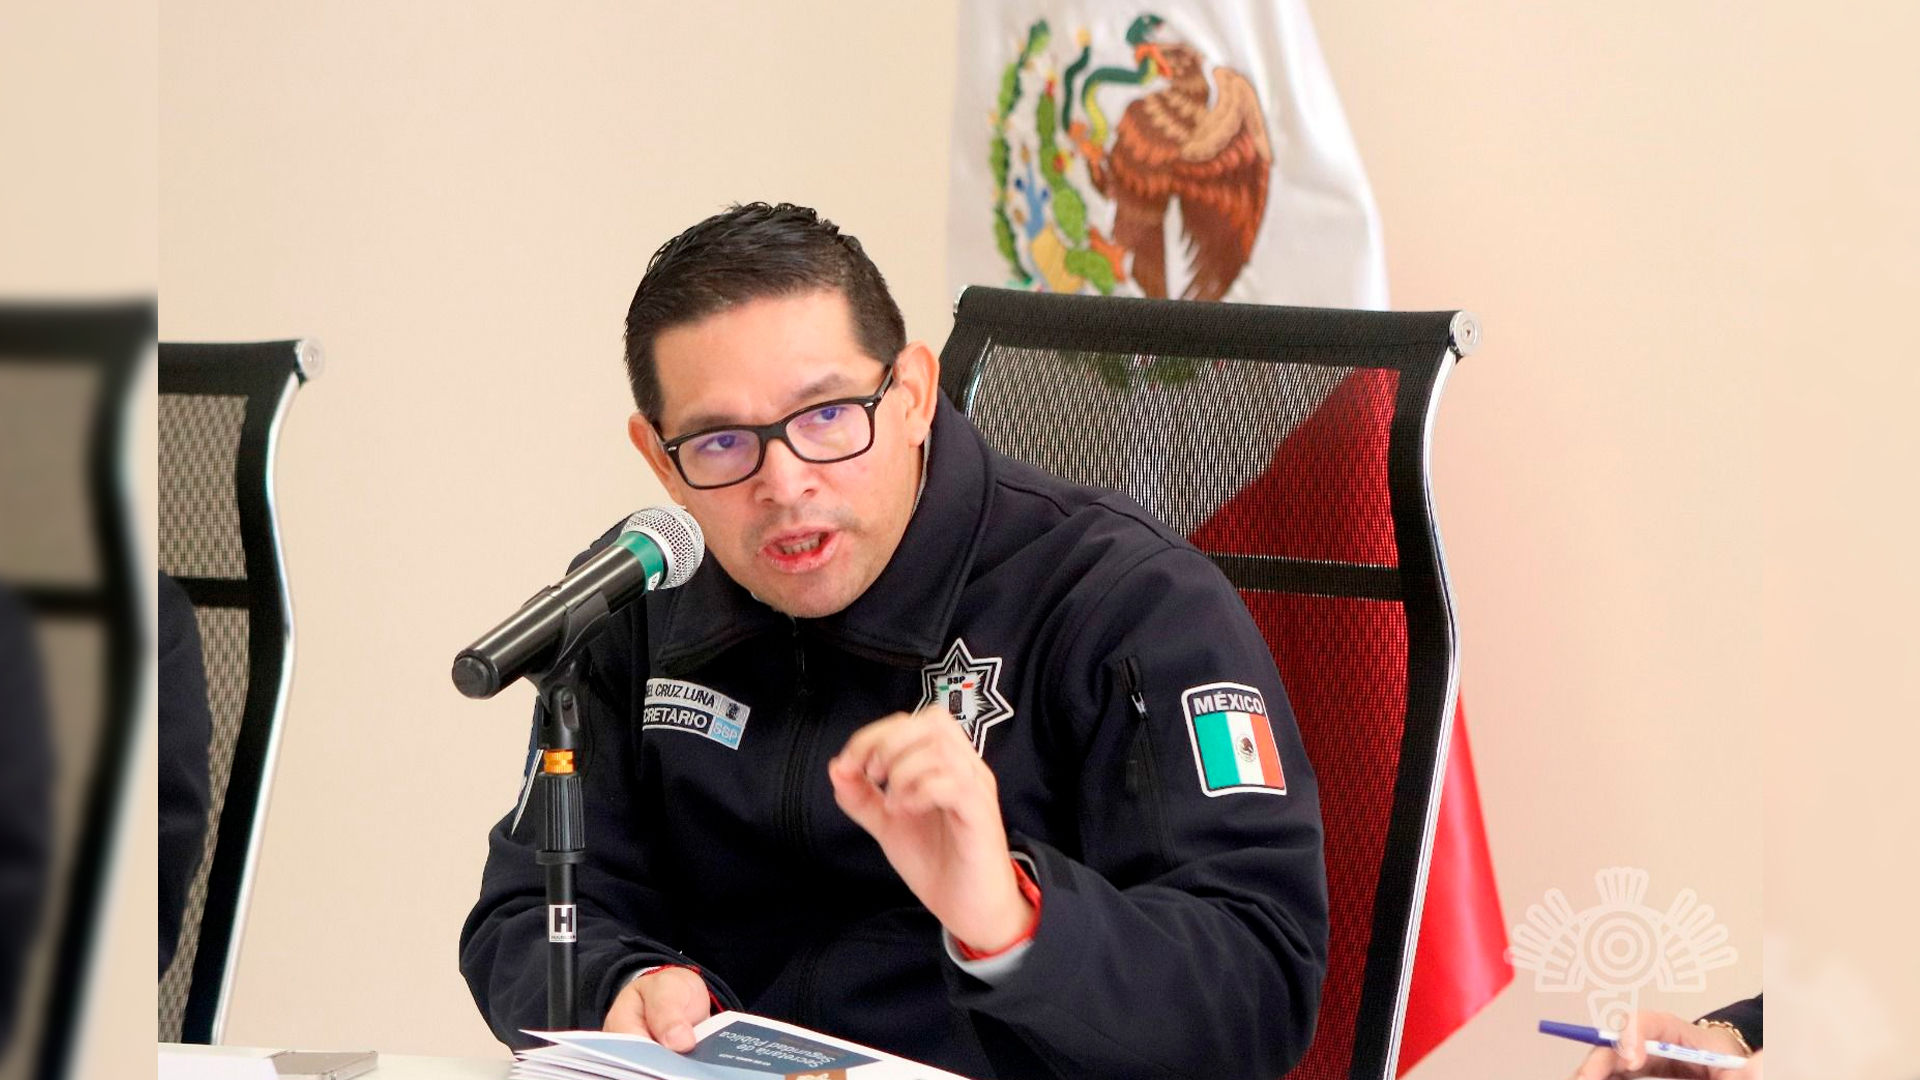 Banda de talamontes ataca a policías en Puebla: un oficial muerto y dos heridos